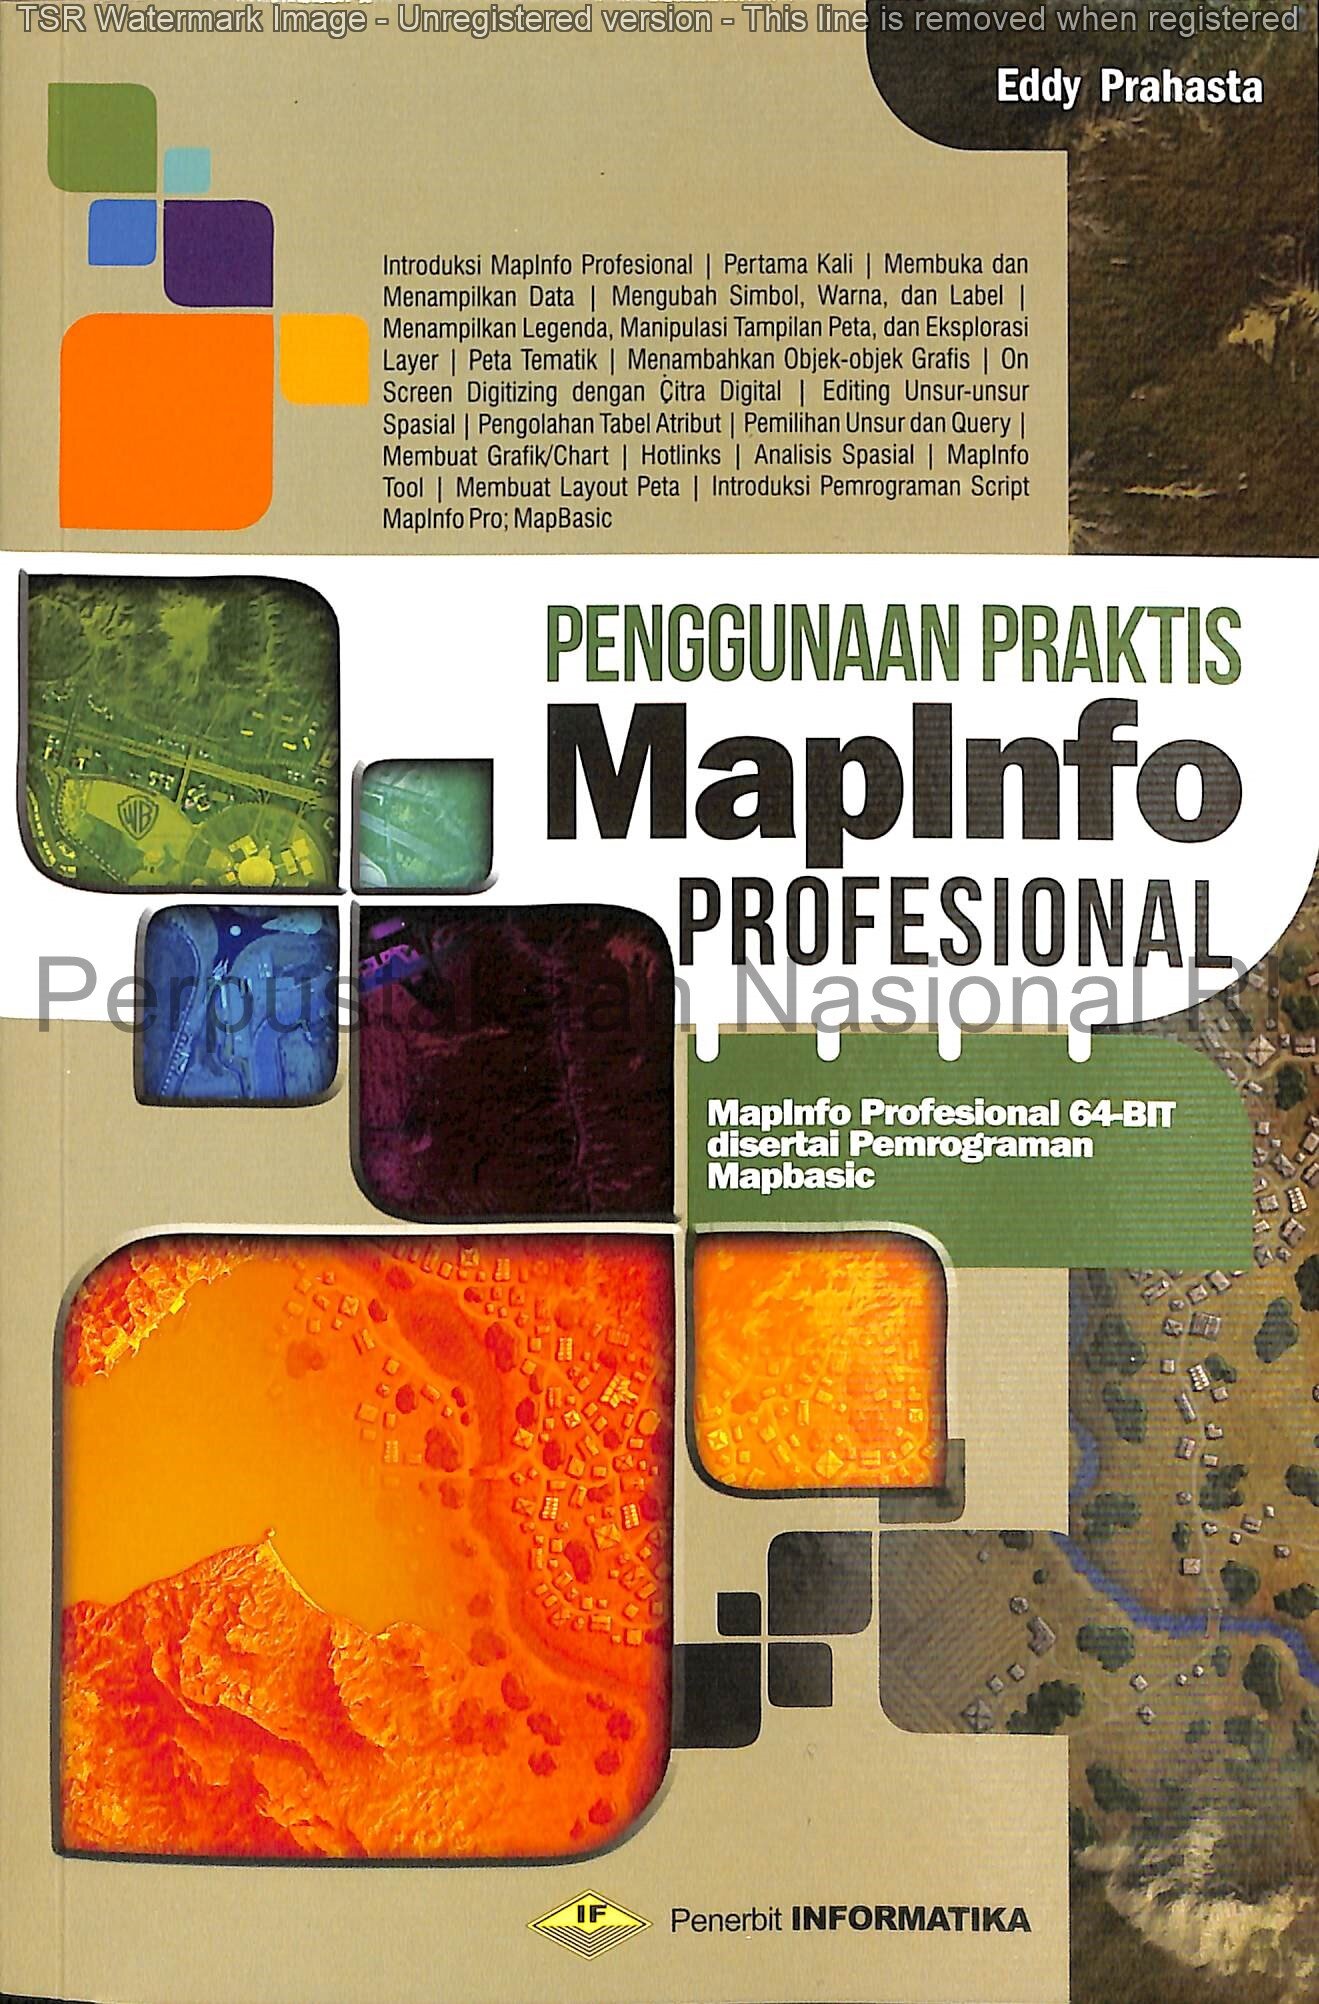 Penggunaan Praktis MapInfo Profesional : MapInfo Profesional 64-Bit disertai Pemrograman Mapinfo